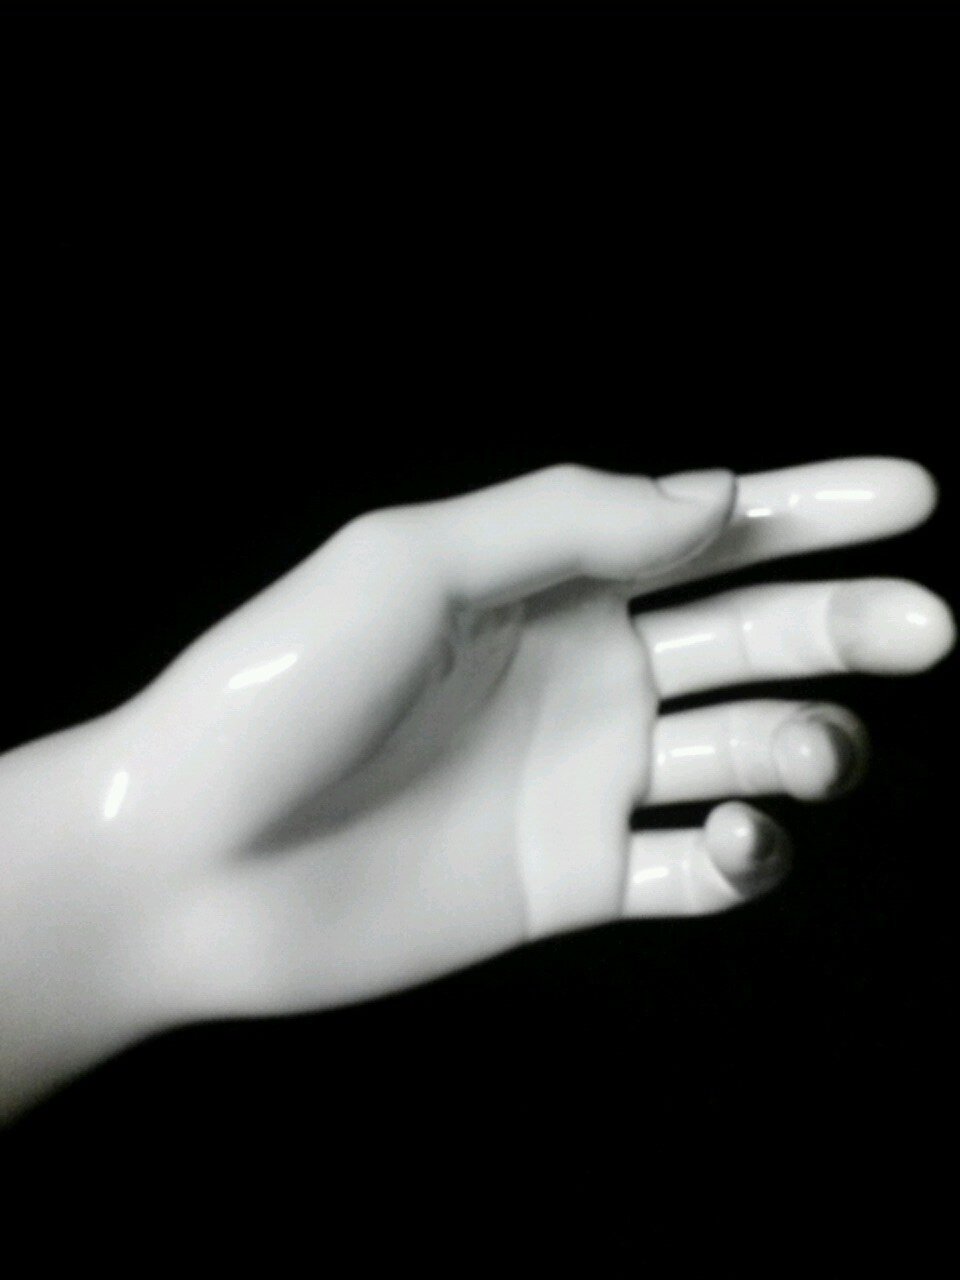 I'm a hand...